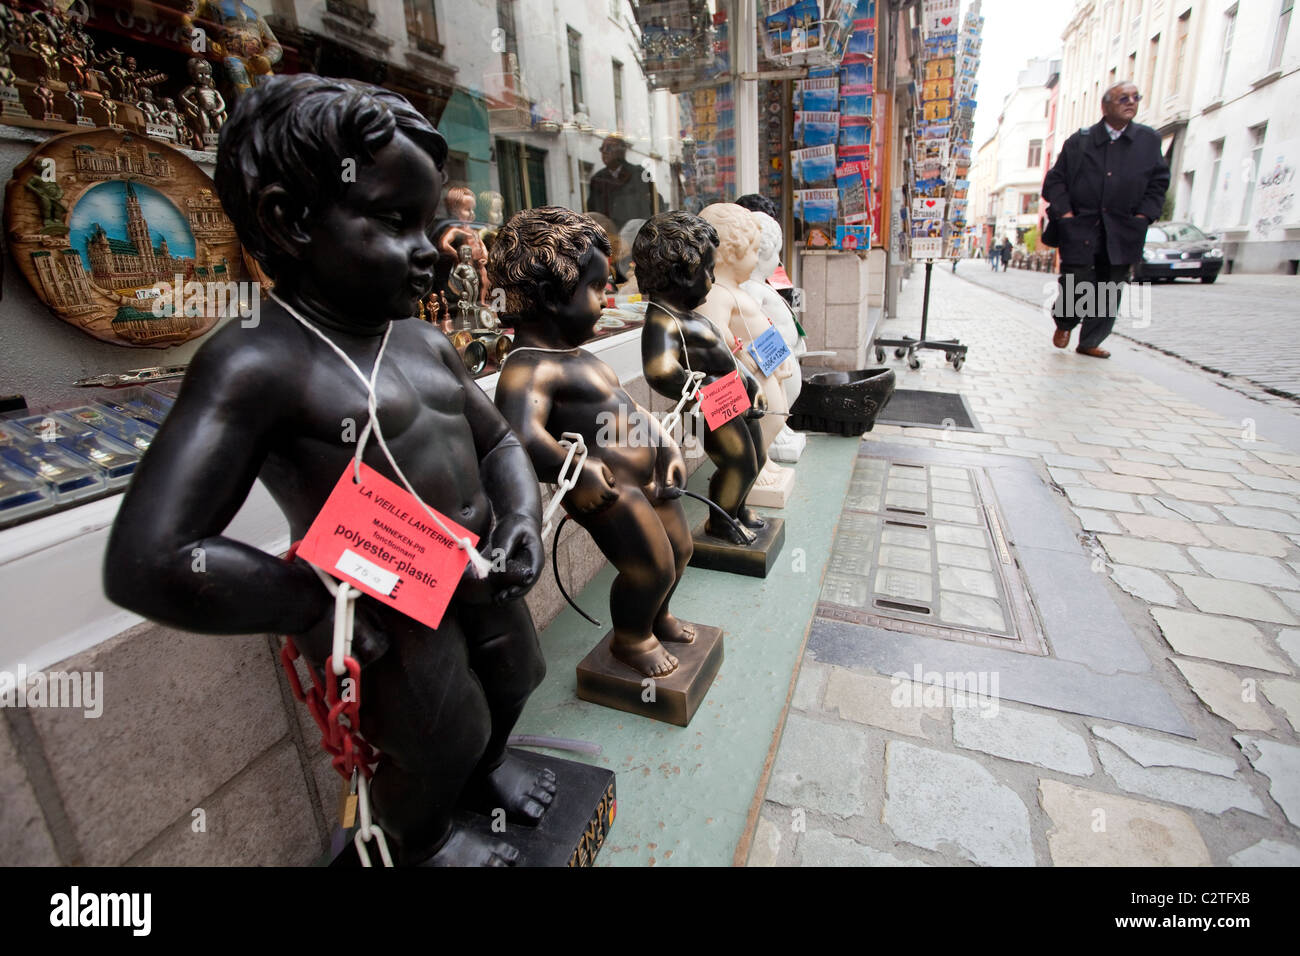 Manneken Pis statues in a shop in Brussels Stock Photo